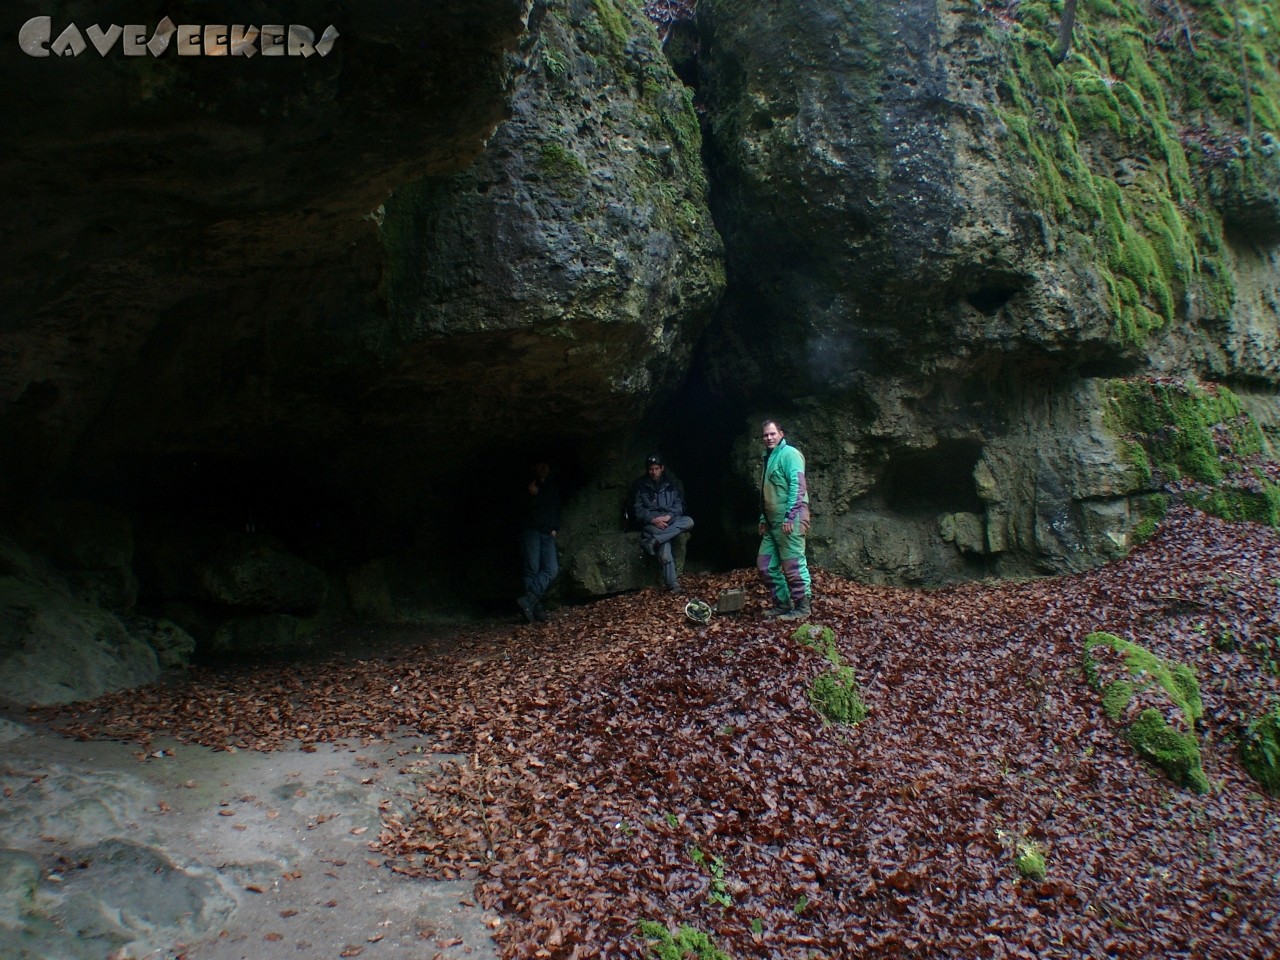 Bärenhöhle: Haupteingang. Schön groß. Leicht befahrbar. Mit Menschen.